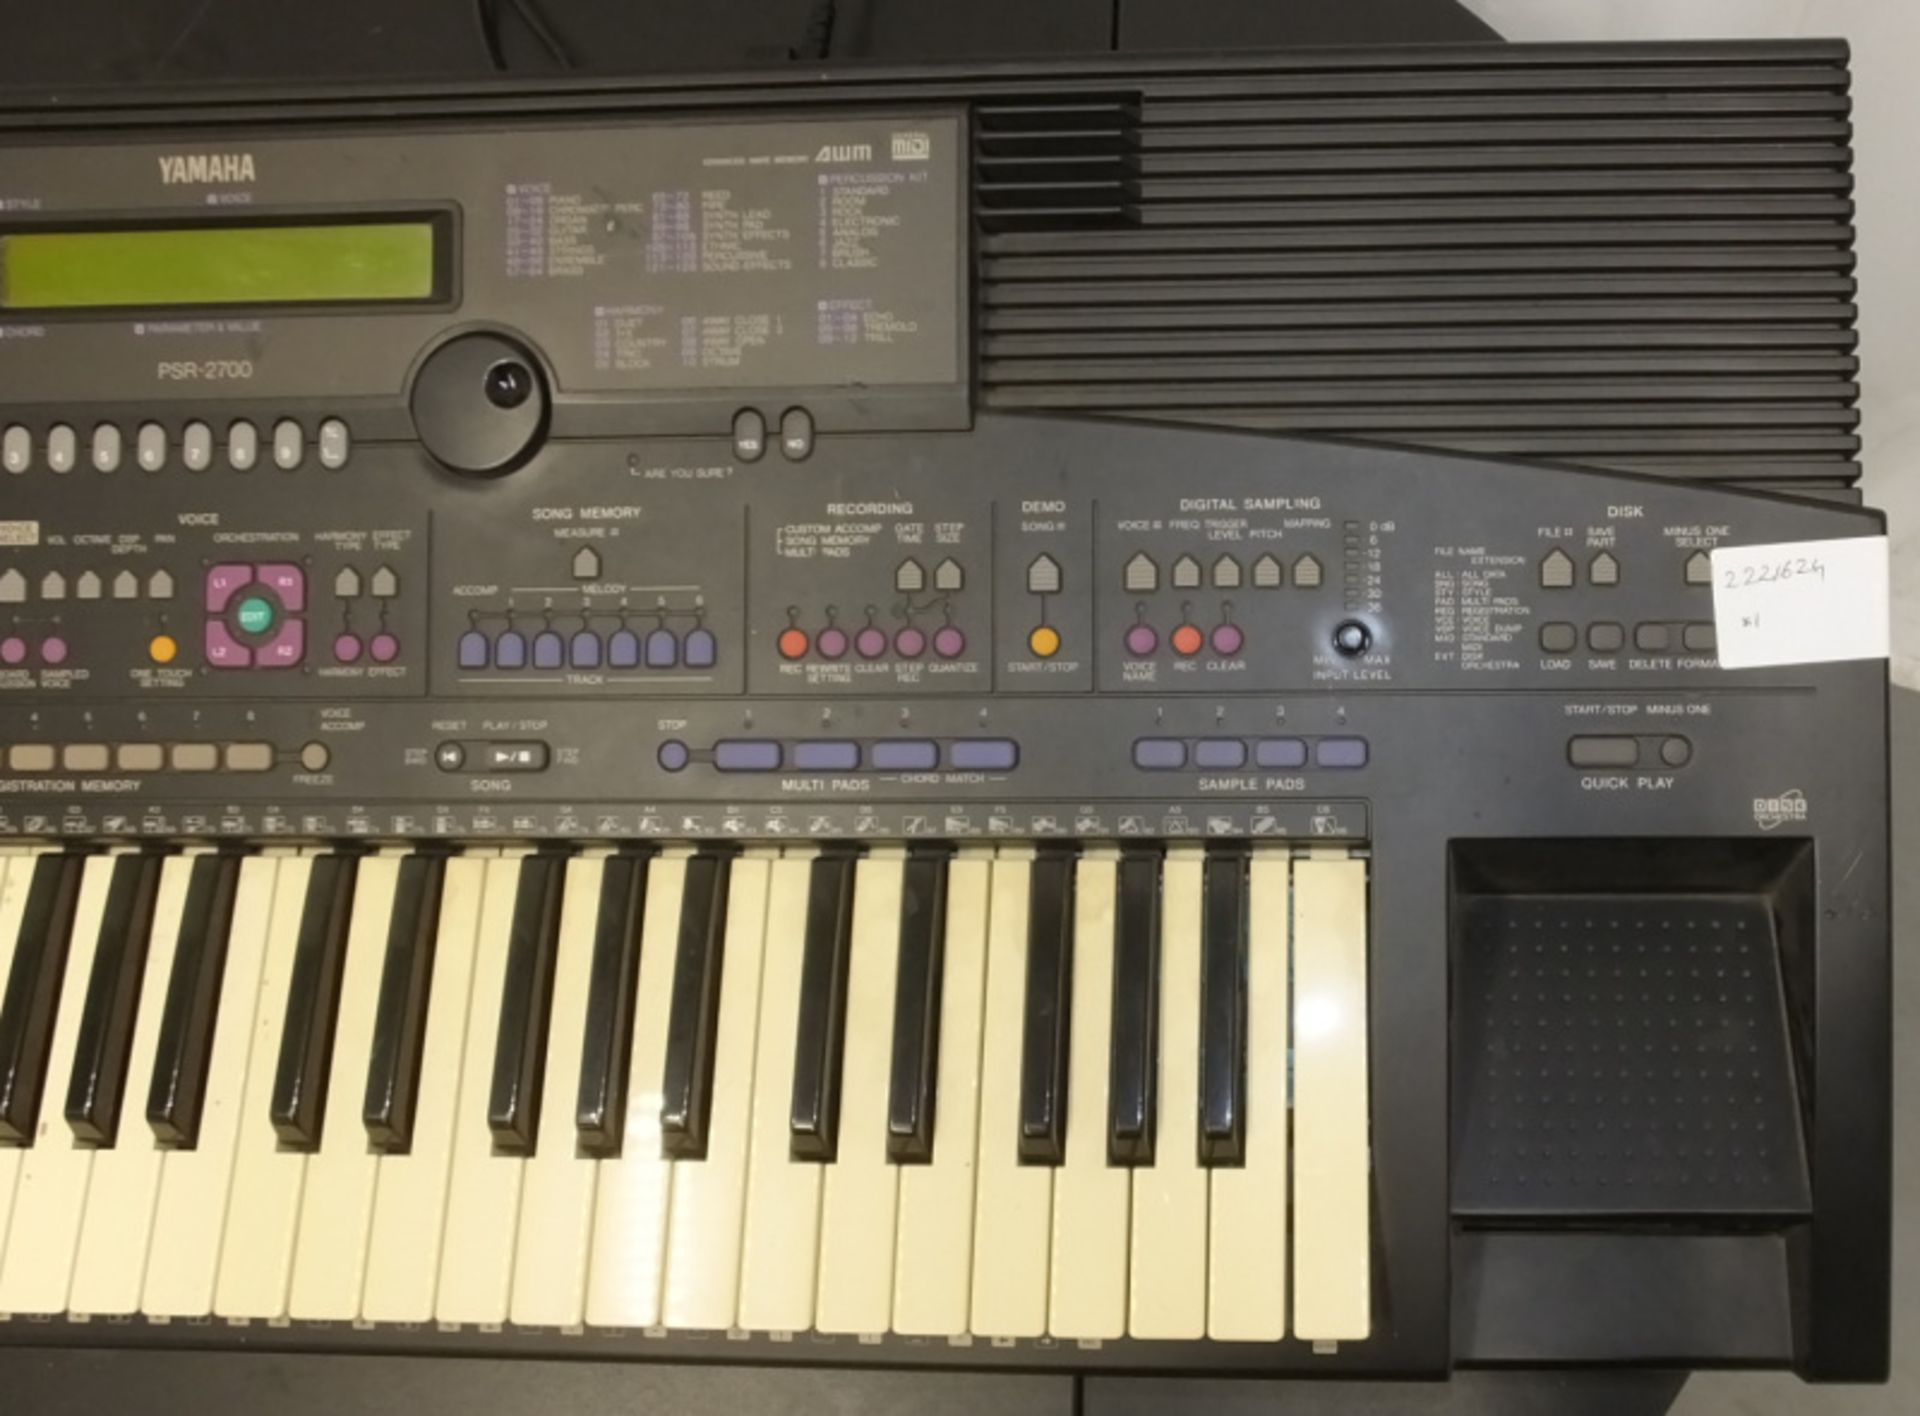 Yamaha PSR-2700 Keyboard - Image 4 of 10